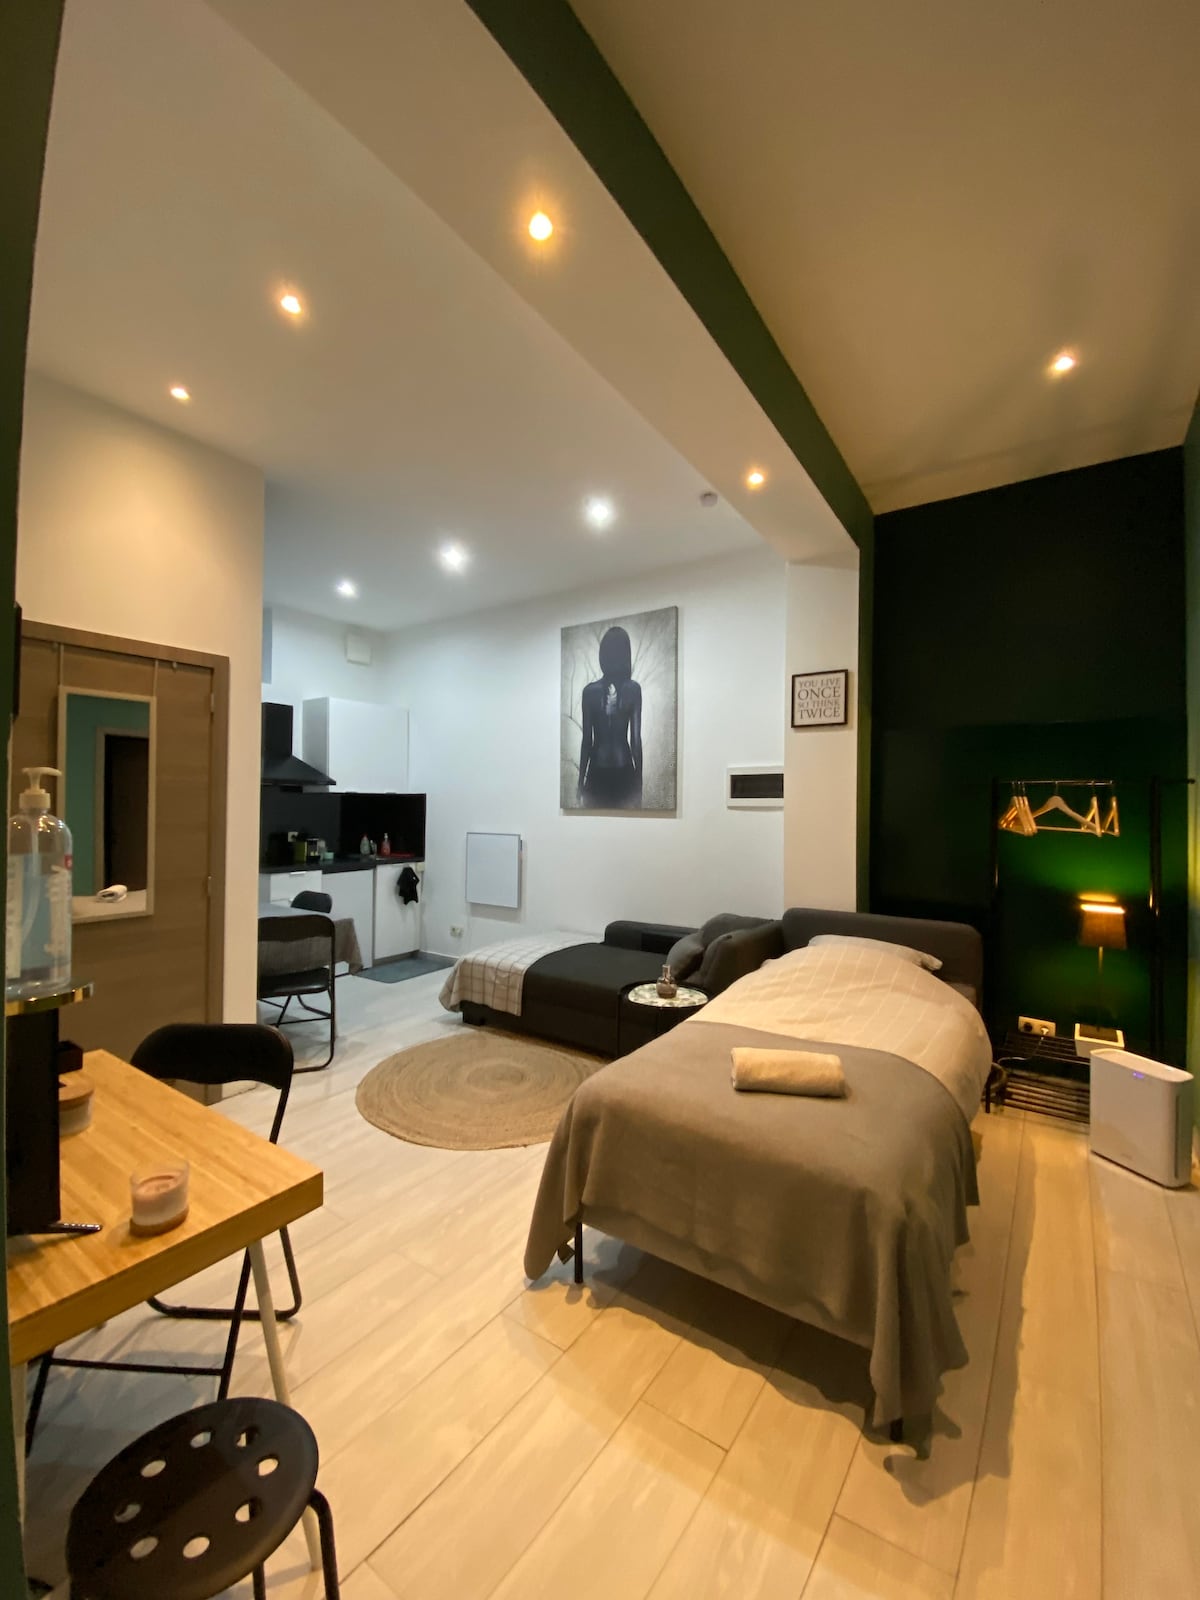 Sonian Forest Apartment Rentals - Belgium | Airbnb